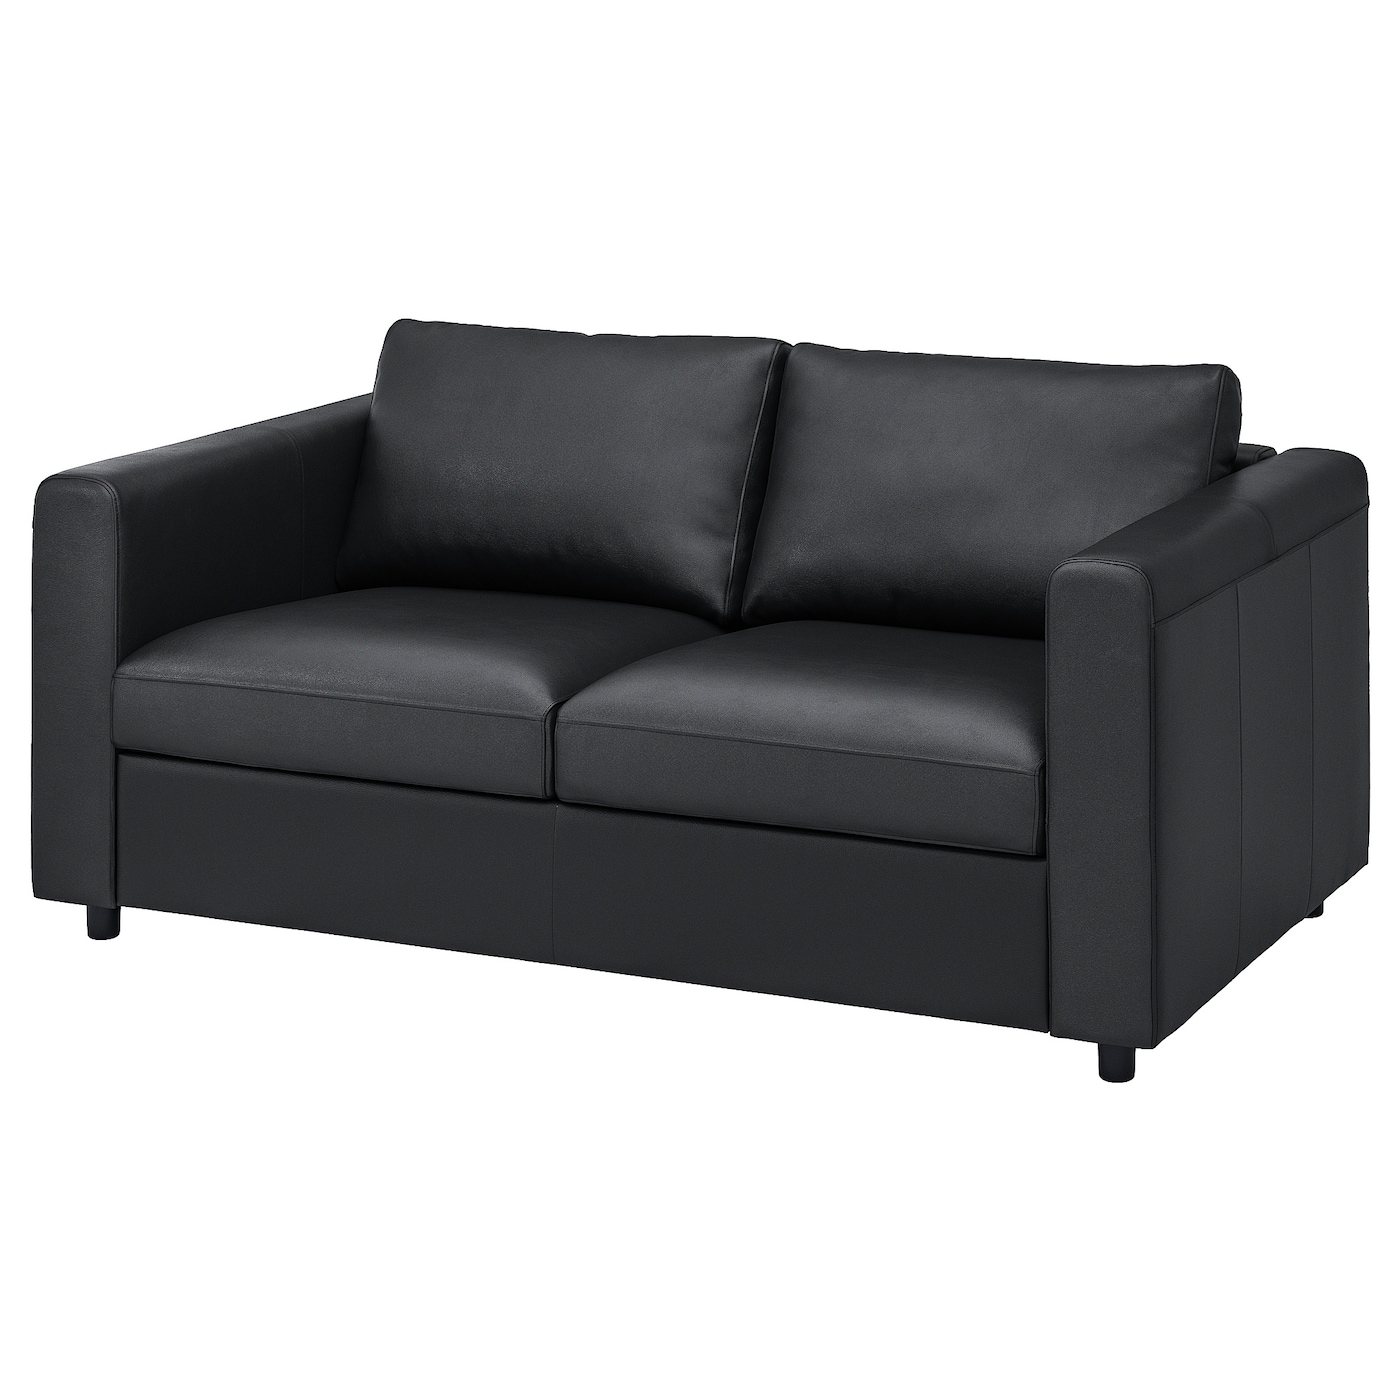 2-местный диван - IKEA VIMLE, 171х98х80 см, черный, кожа, ВИМЛЕ ИКЕА